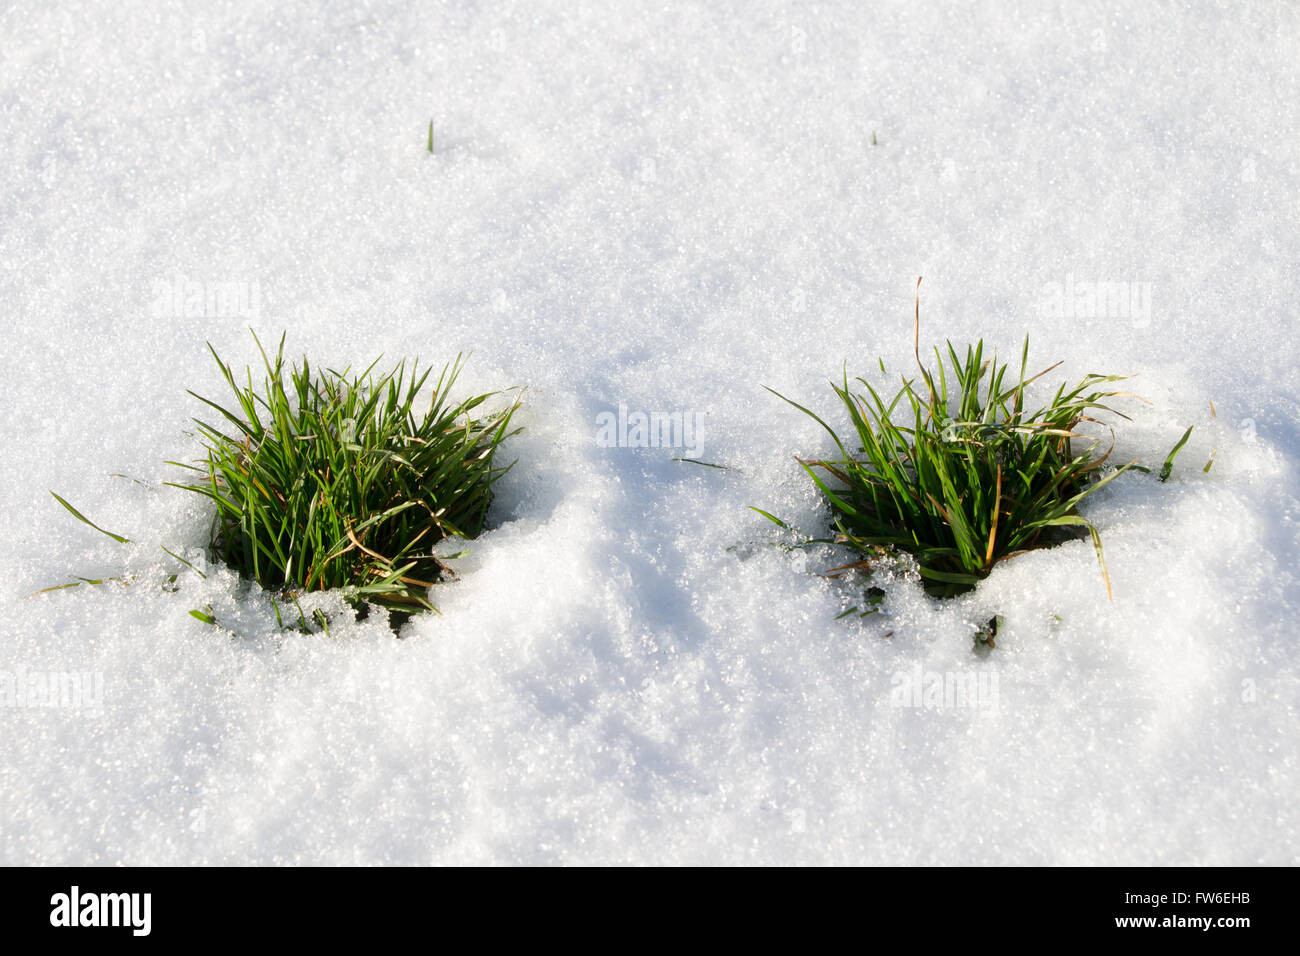 Fresco di erba verde sulla neve Foto Stock